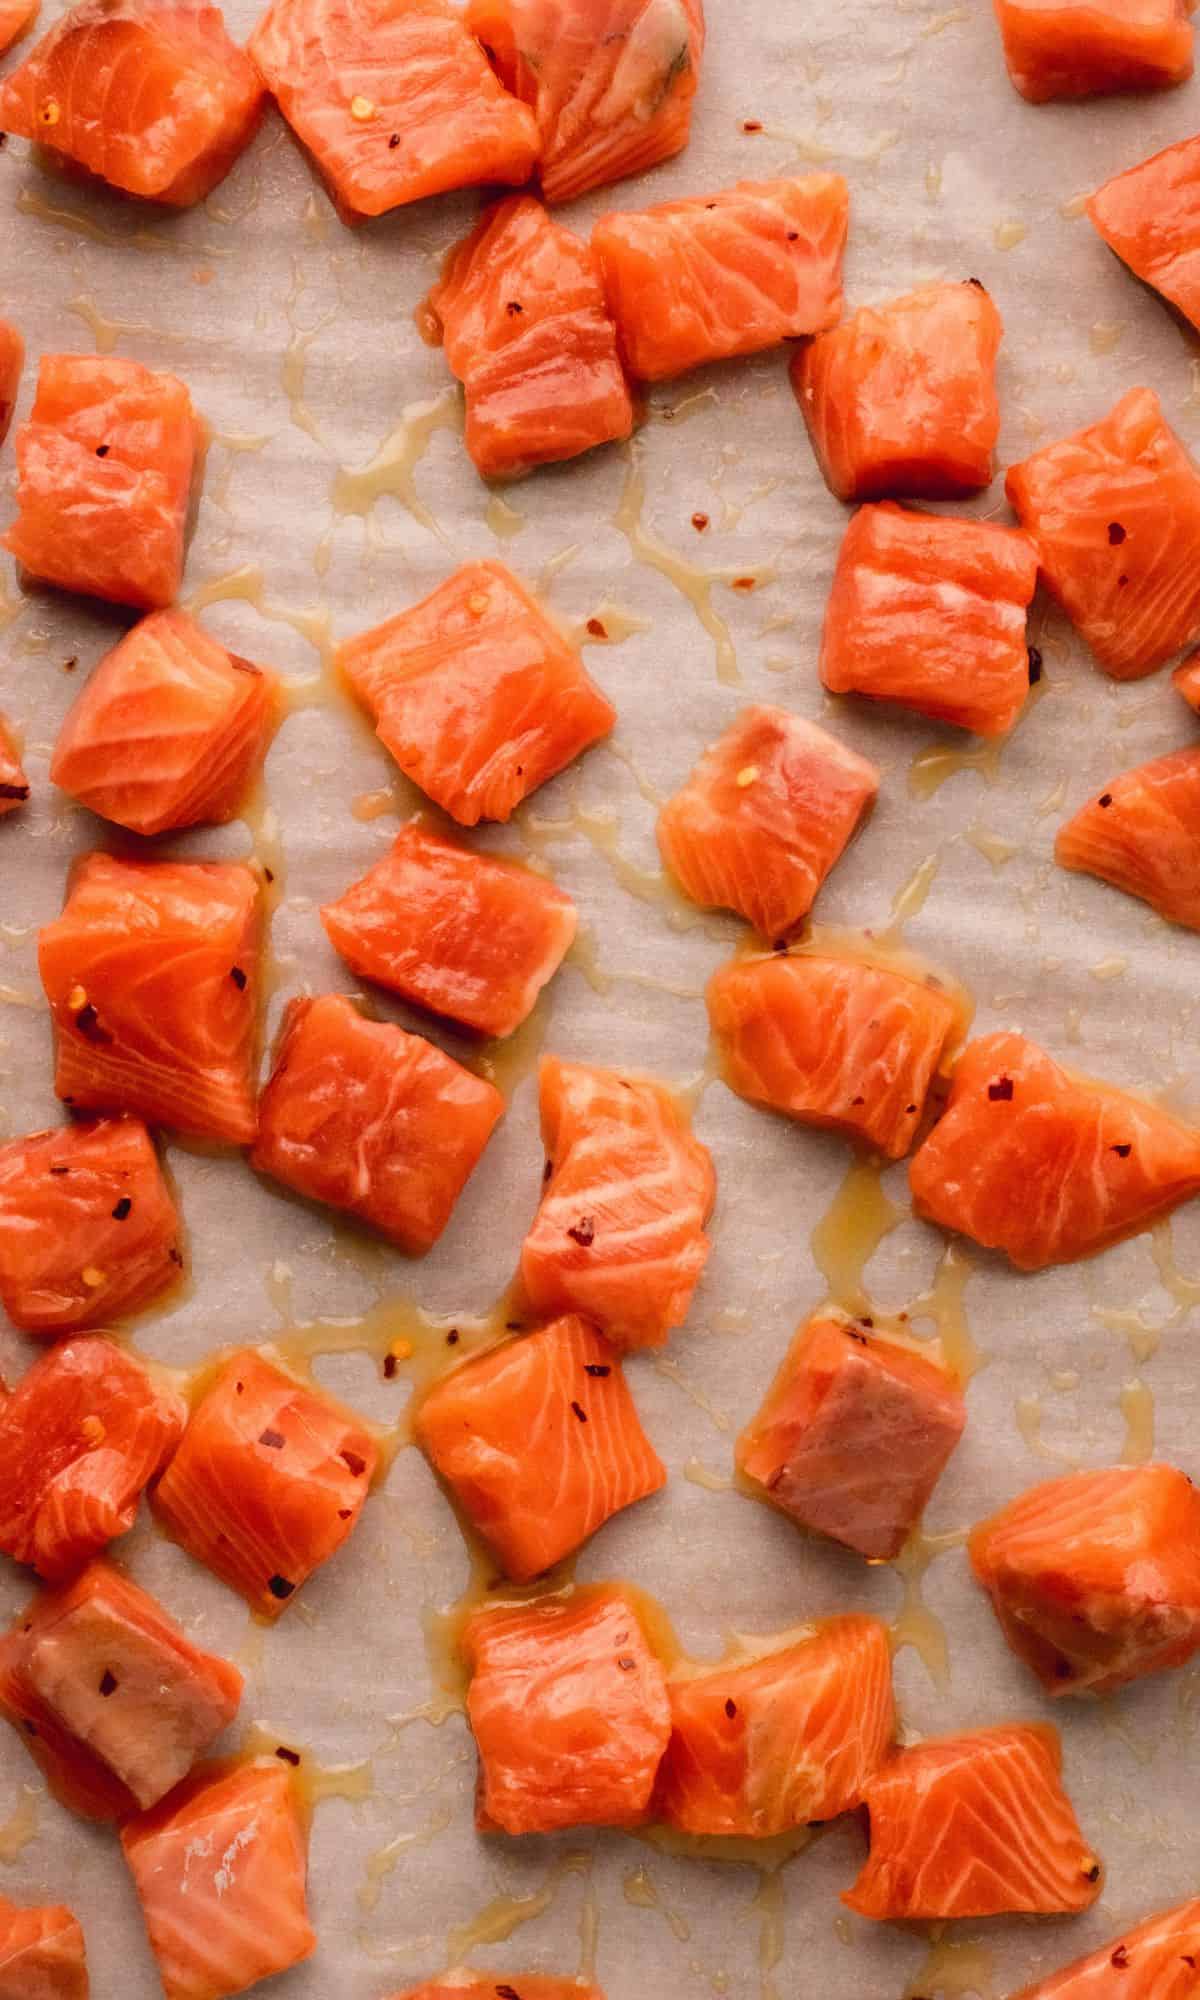 Salmon bites with honey glaze before baking.